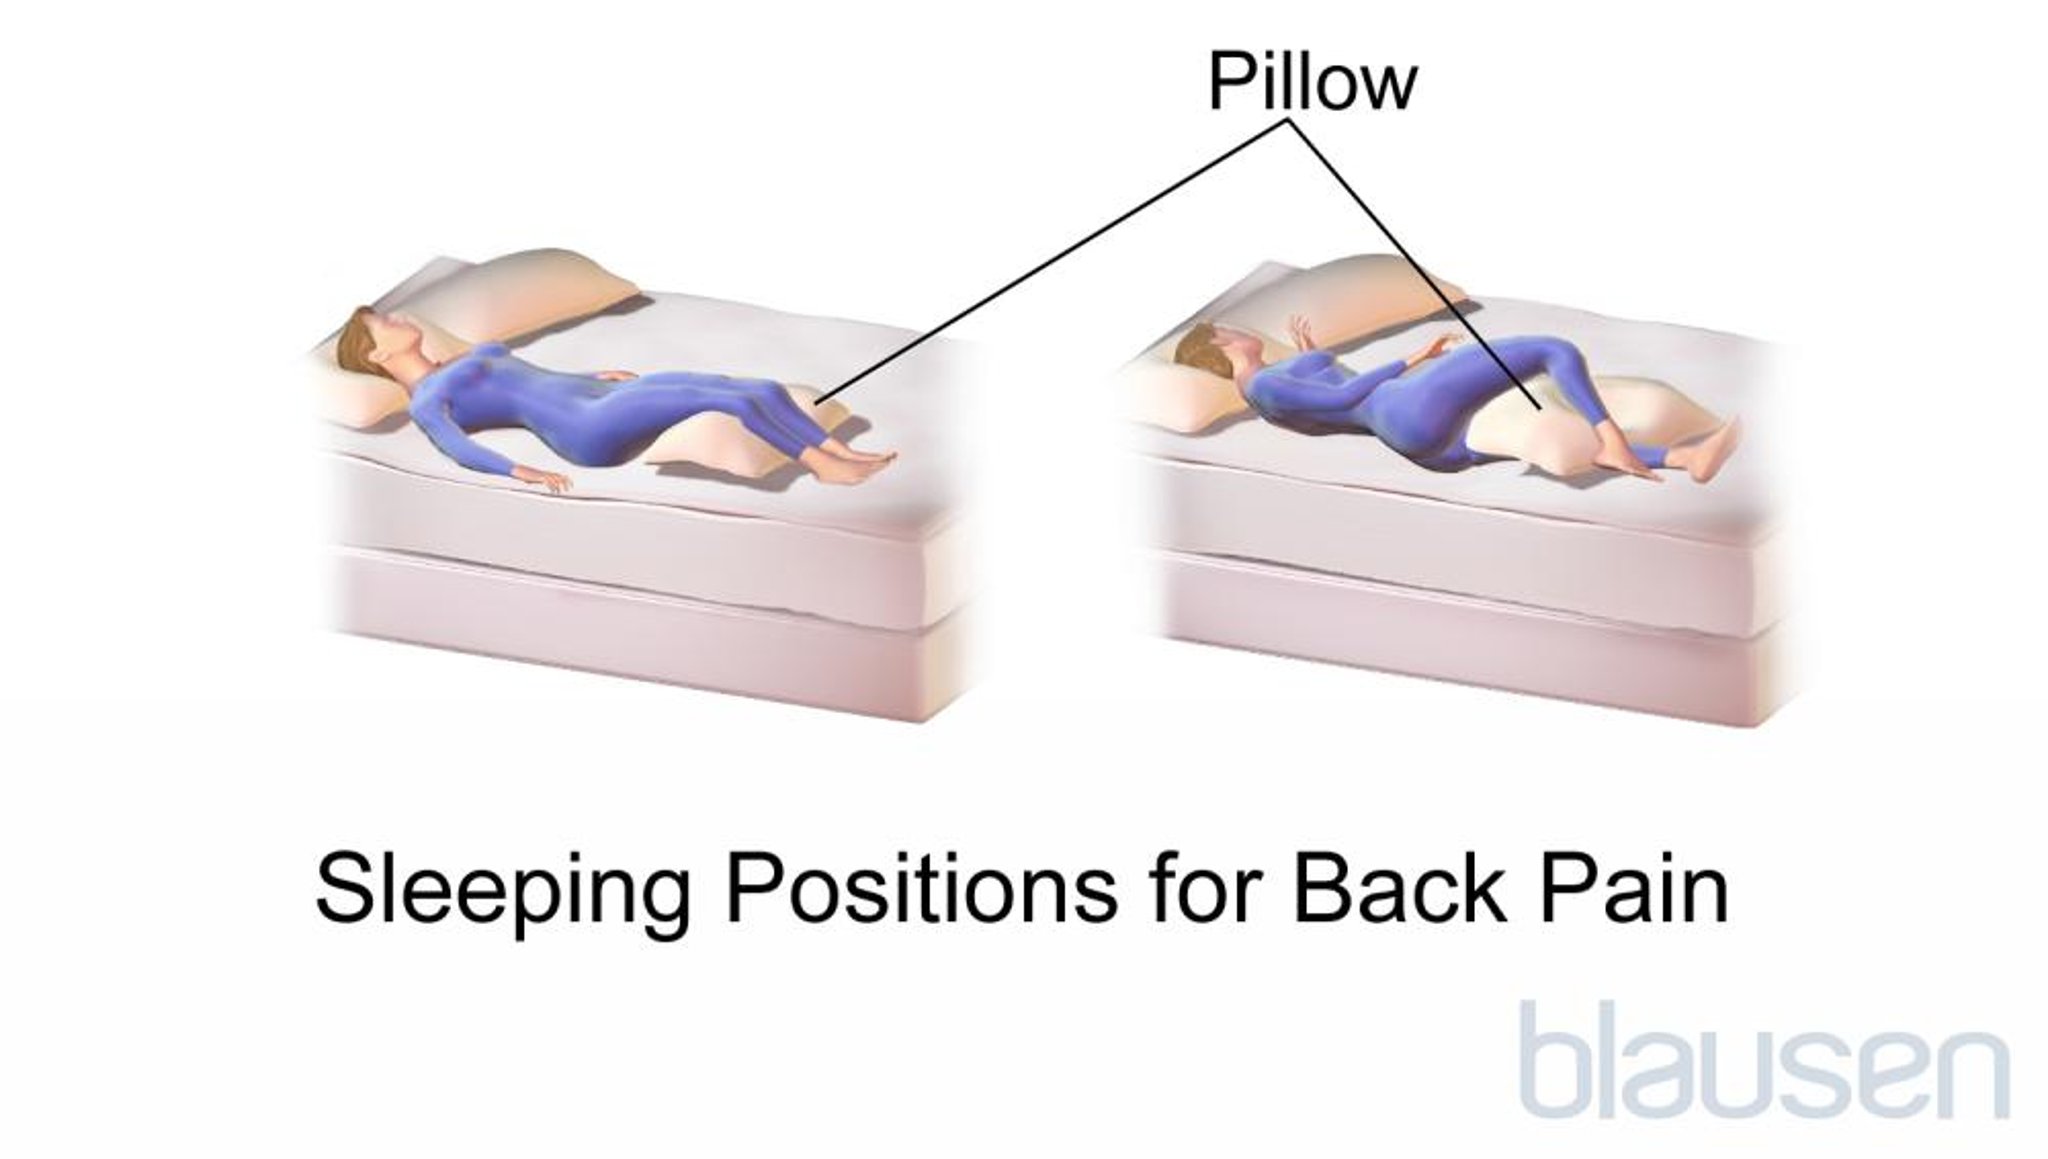 Posizioni durante il sonno per il dolore alla schiena